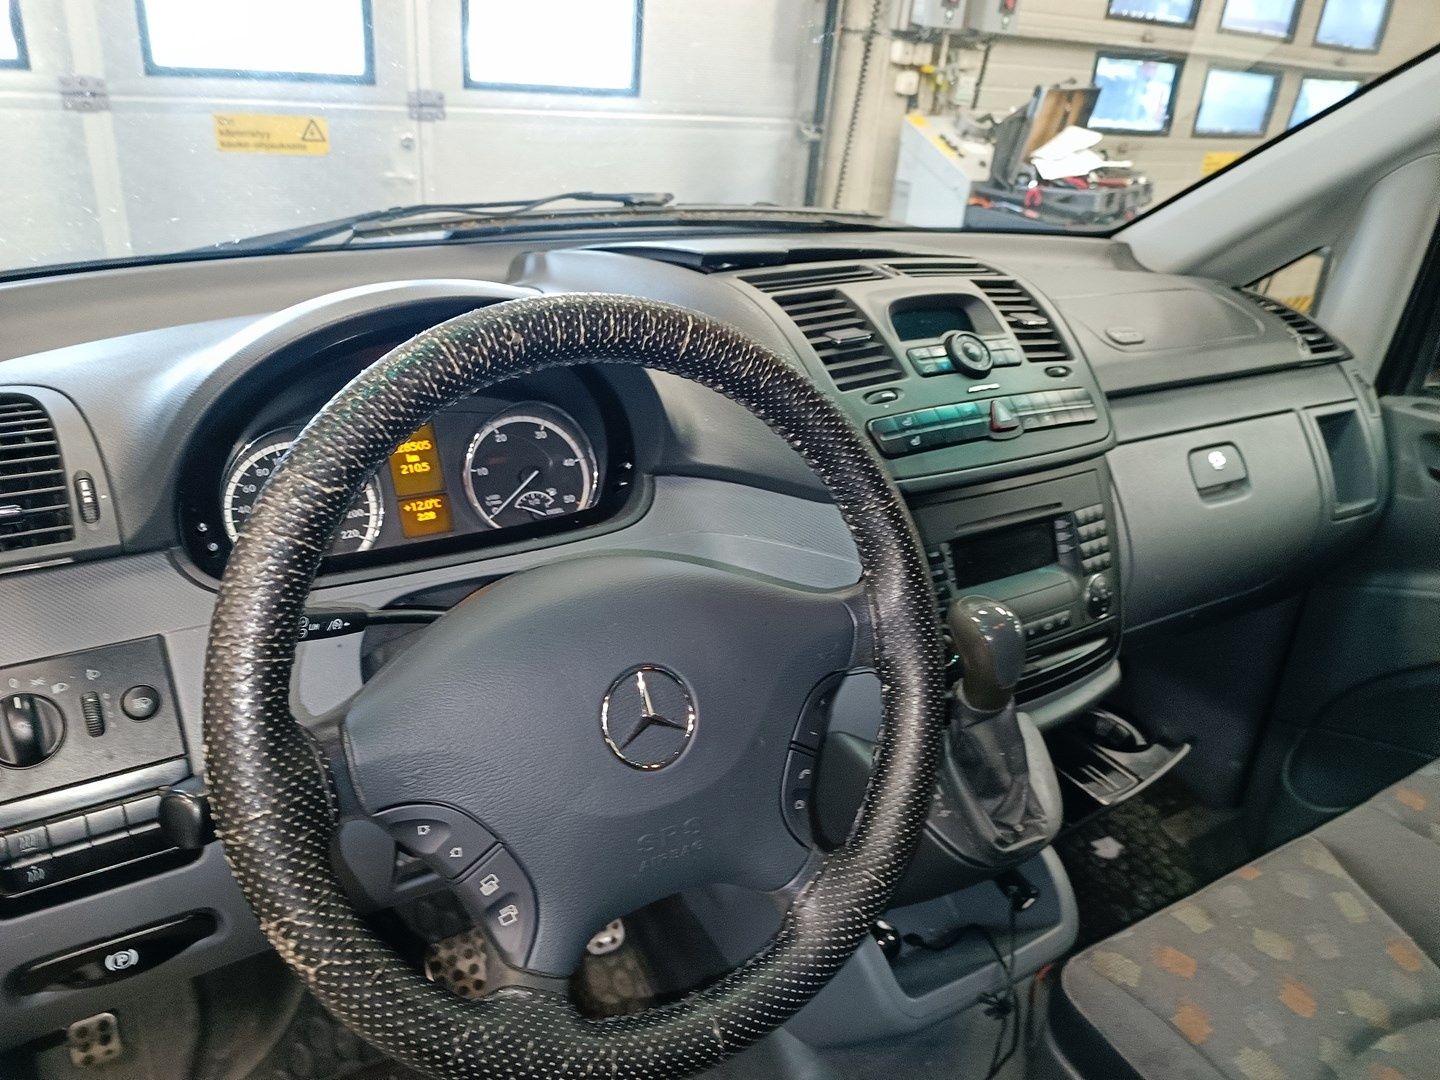 Mercedes Vito 120CDI V6 automat sprowadzony bogate wyposażenie